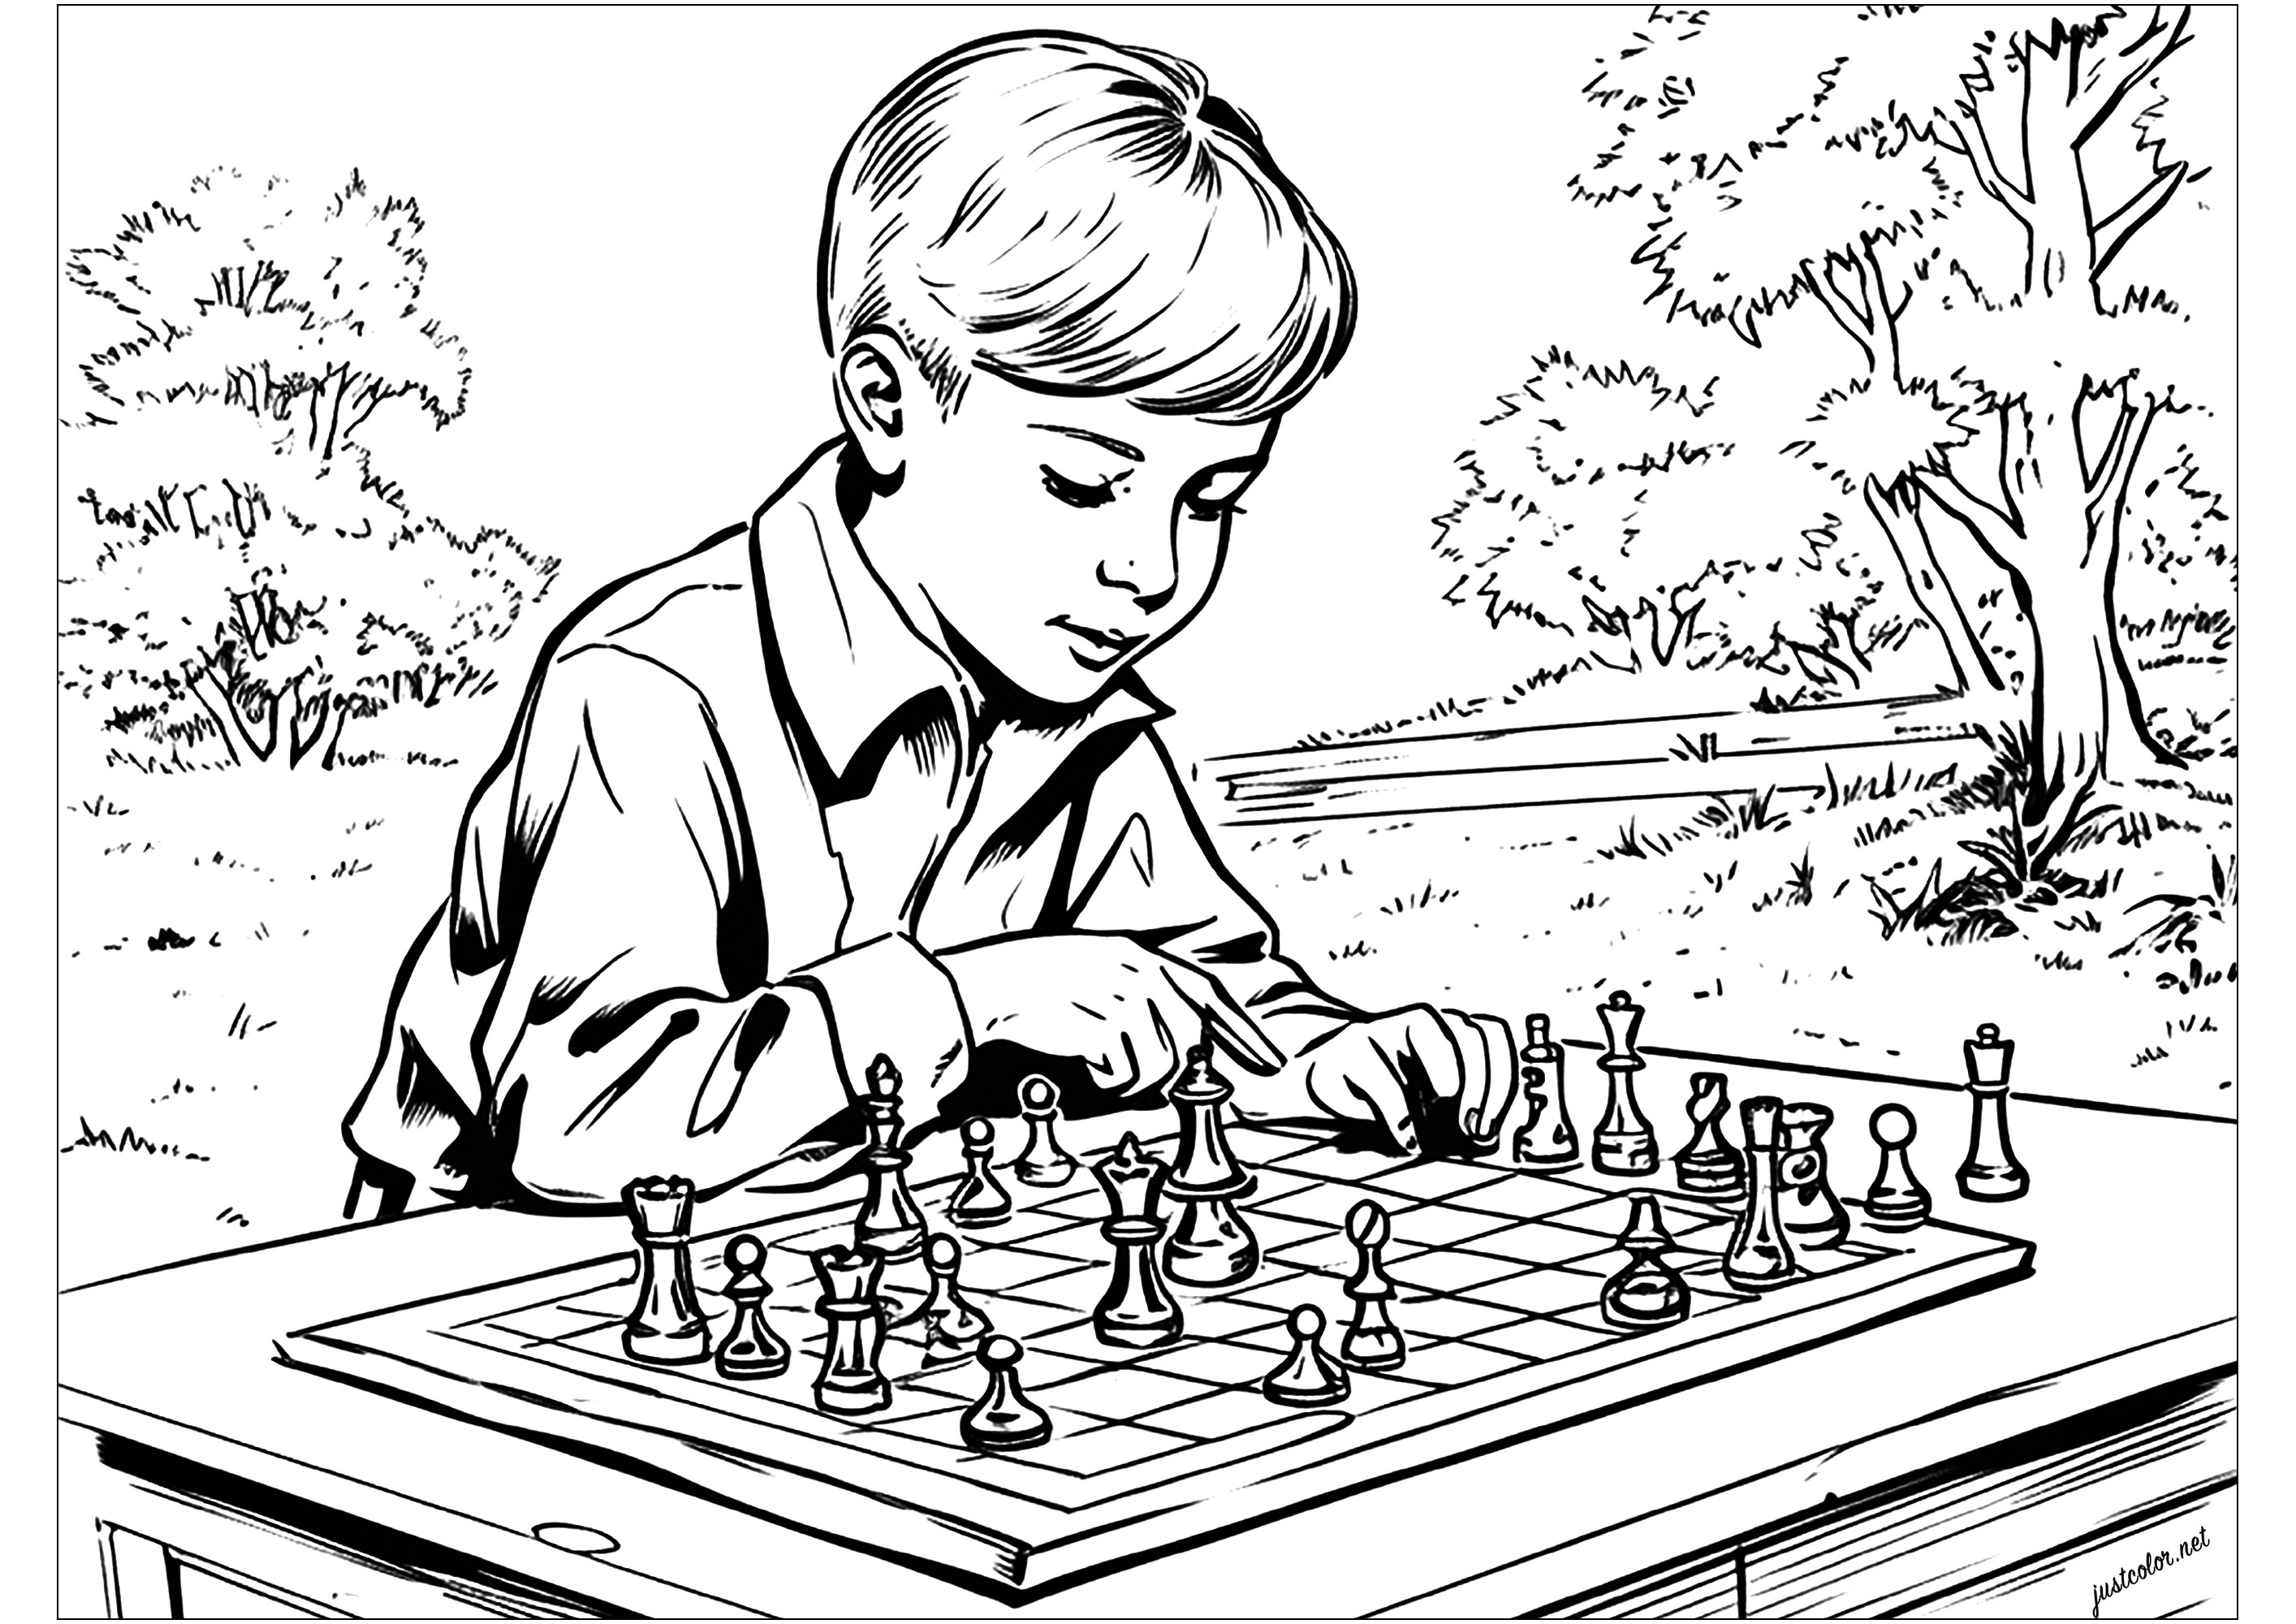 Colorear a un niño jugando al ajedrez. Un estilo inspirado en las ilustraciones de libros de mediados del siglo XX